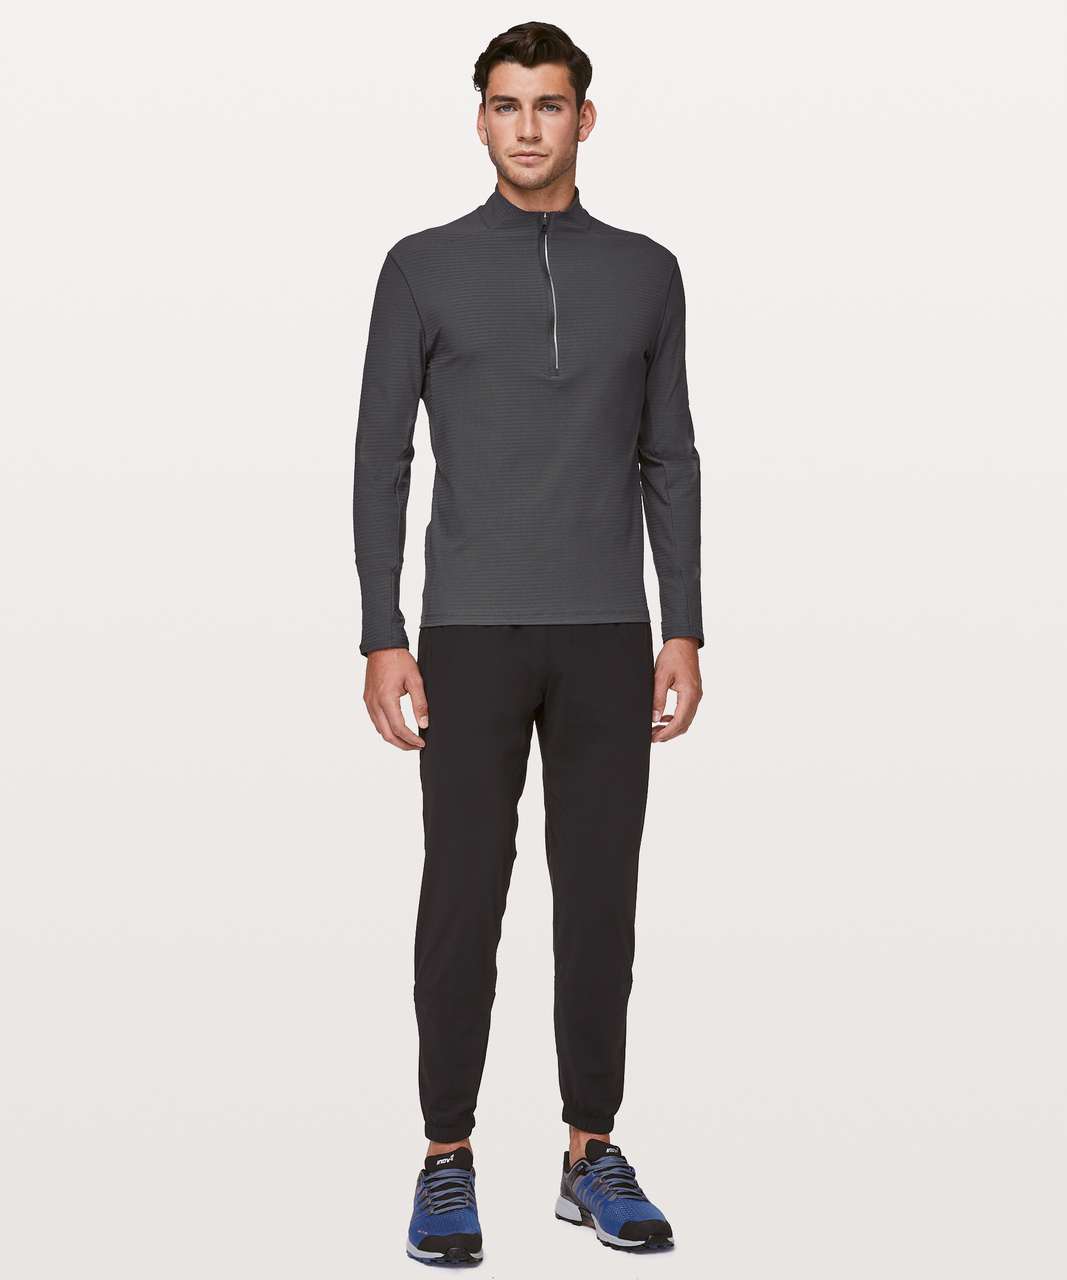 NWT Men's Lululemon Oversized-Fit Fleece Half Zip Grey MSRP $148.00